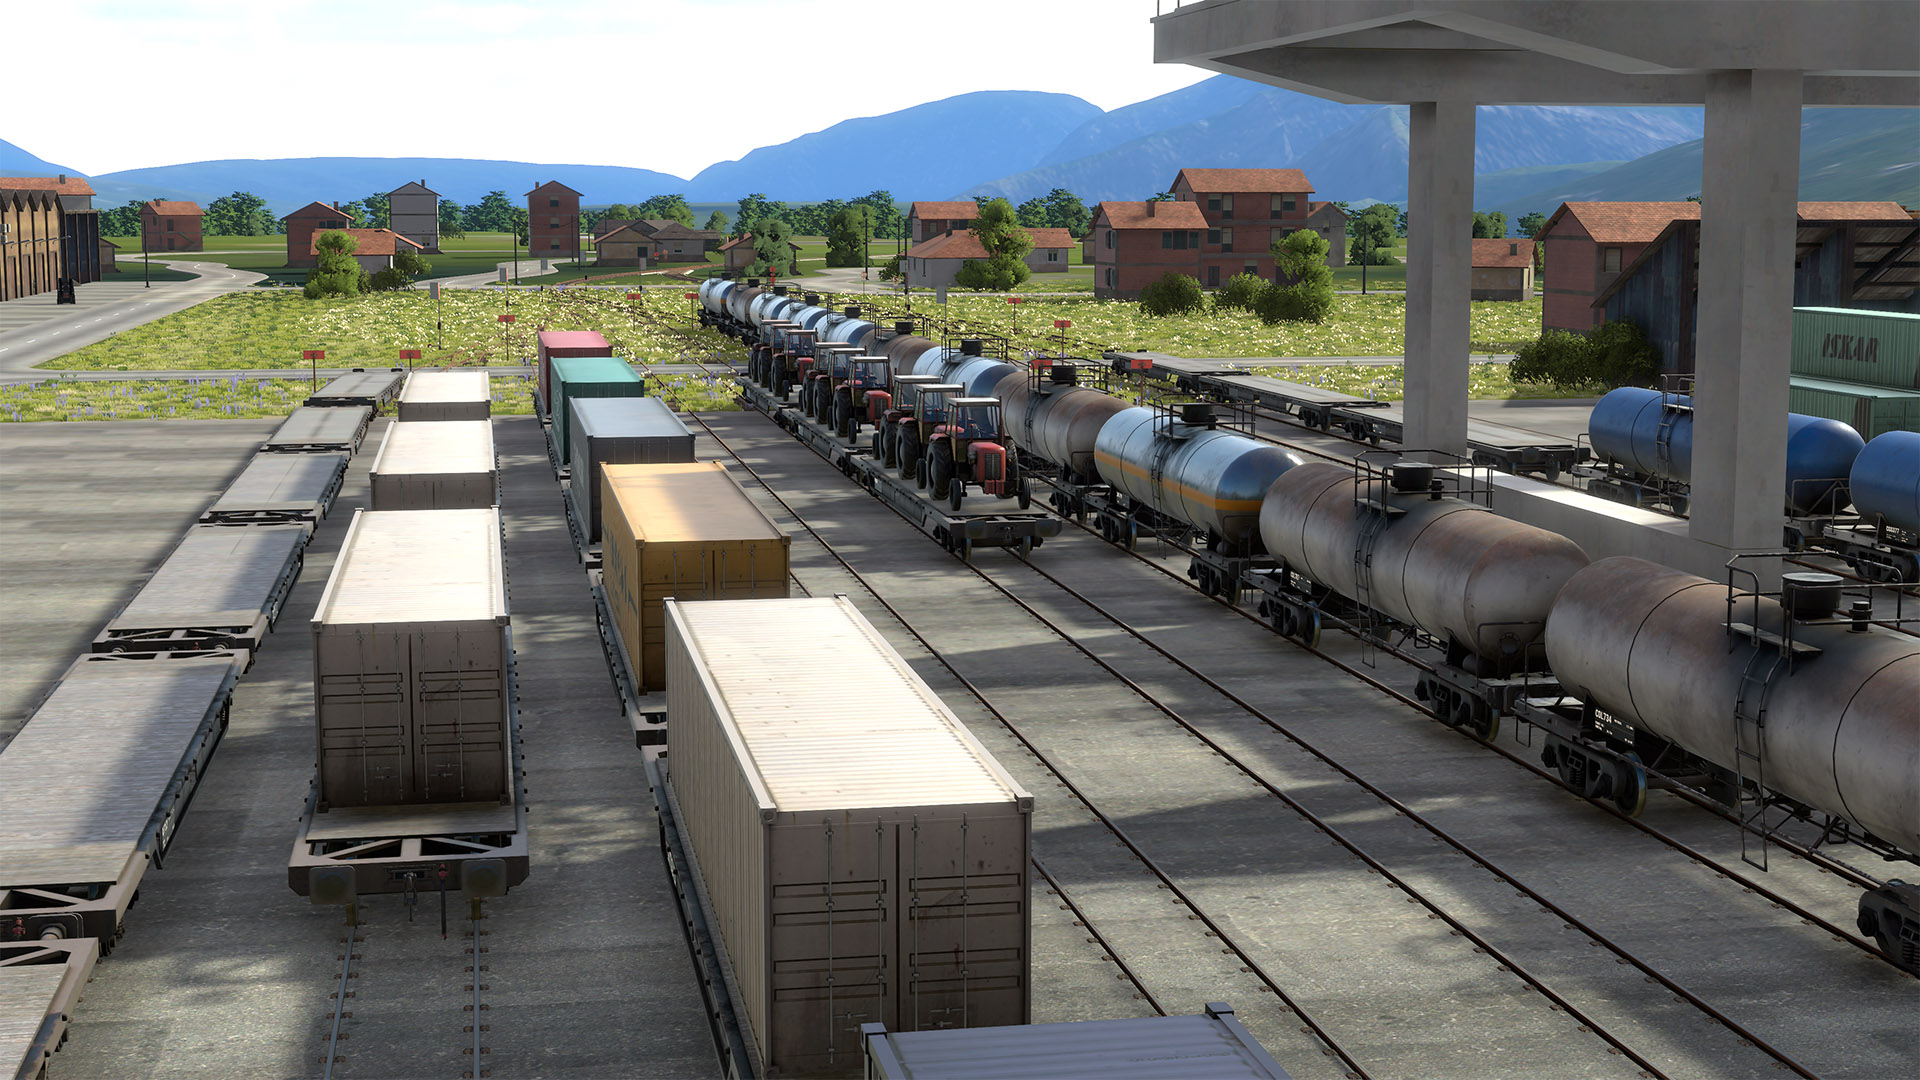 derailvalley-train-yard-tractors-machine-factory-4k.jpg